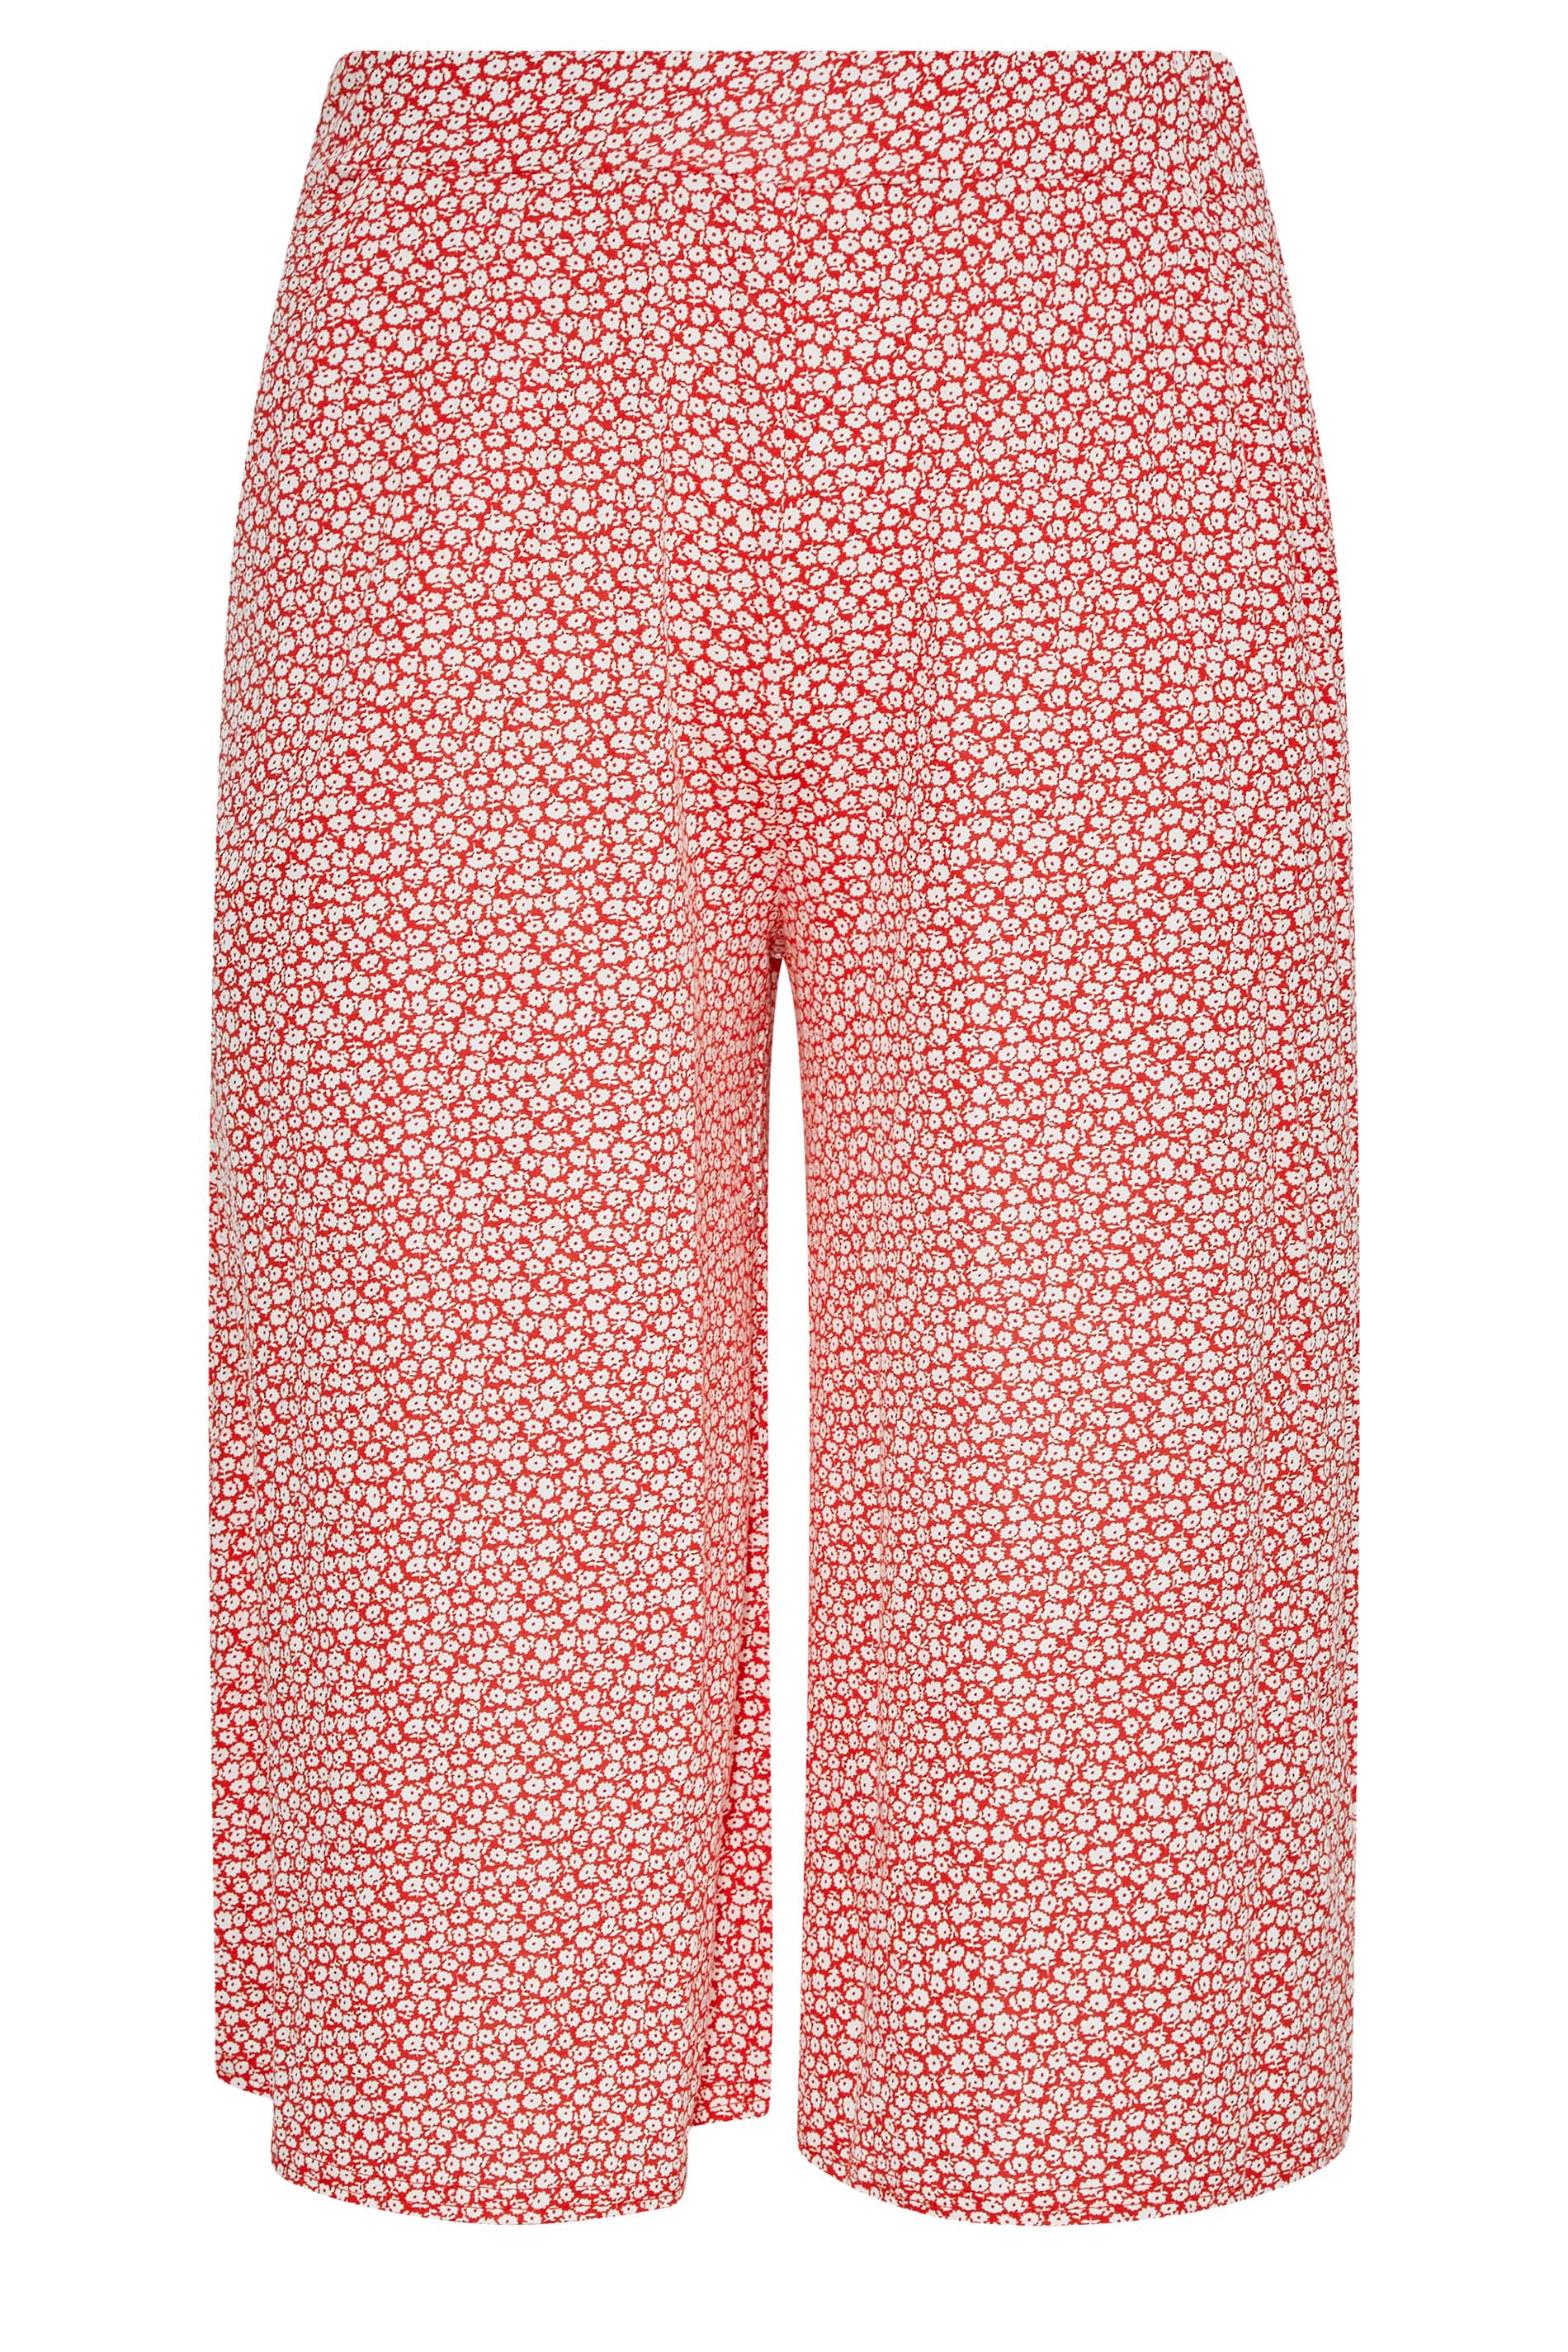 Grande taille  Pantalons Grande taille  Pantacourts | Jupe-Culotte en Jersey Rouge Imprimé Petites Fleurs - WS13556